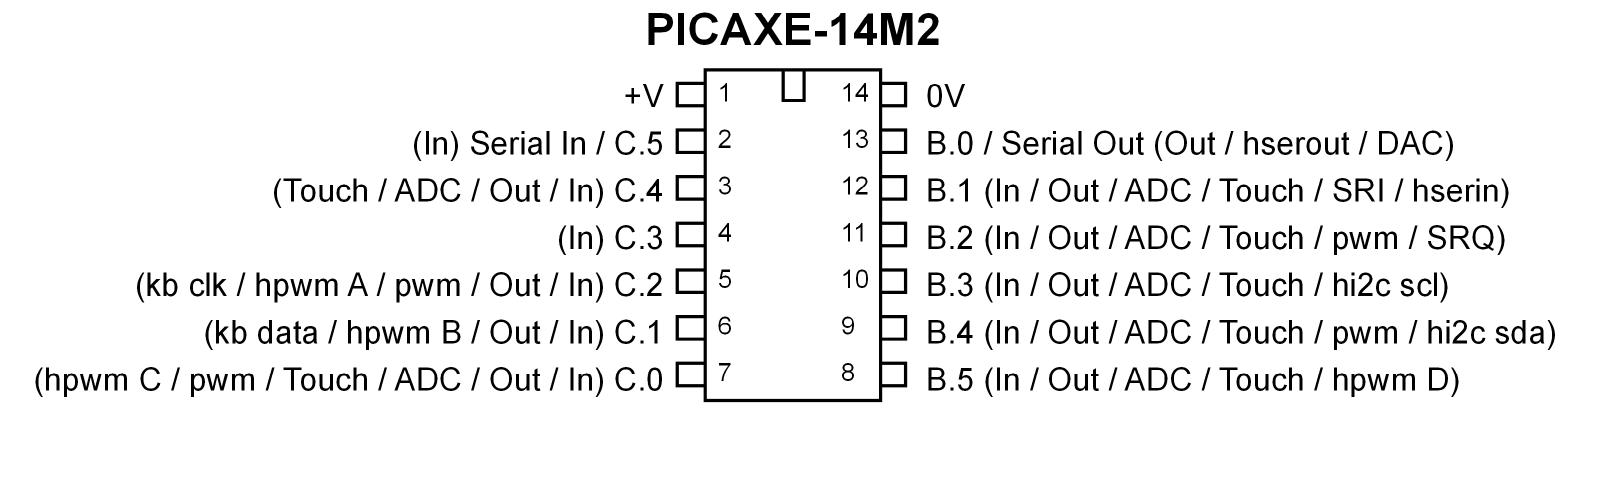 PICAXE 14M2 Microcontroller (14 pin) - COM-10802 - SparkFun Electronics